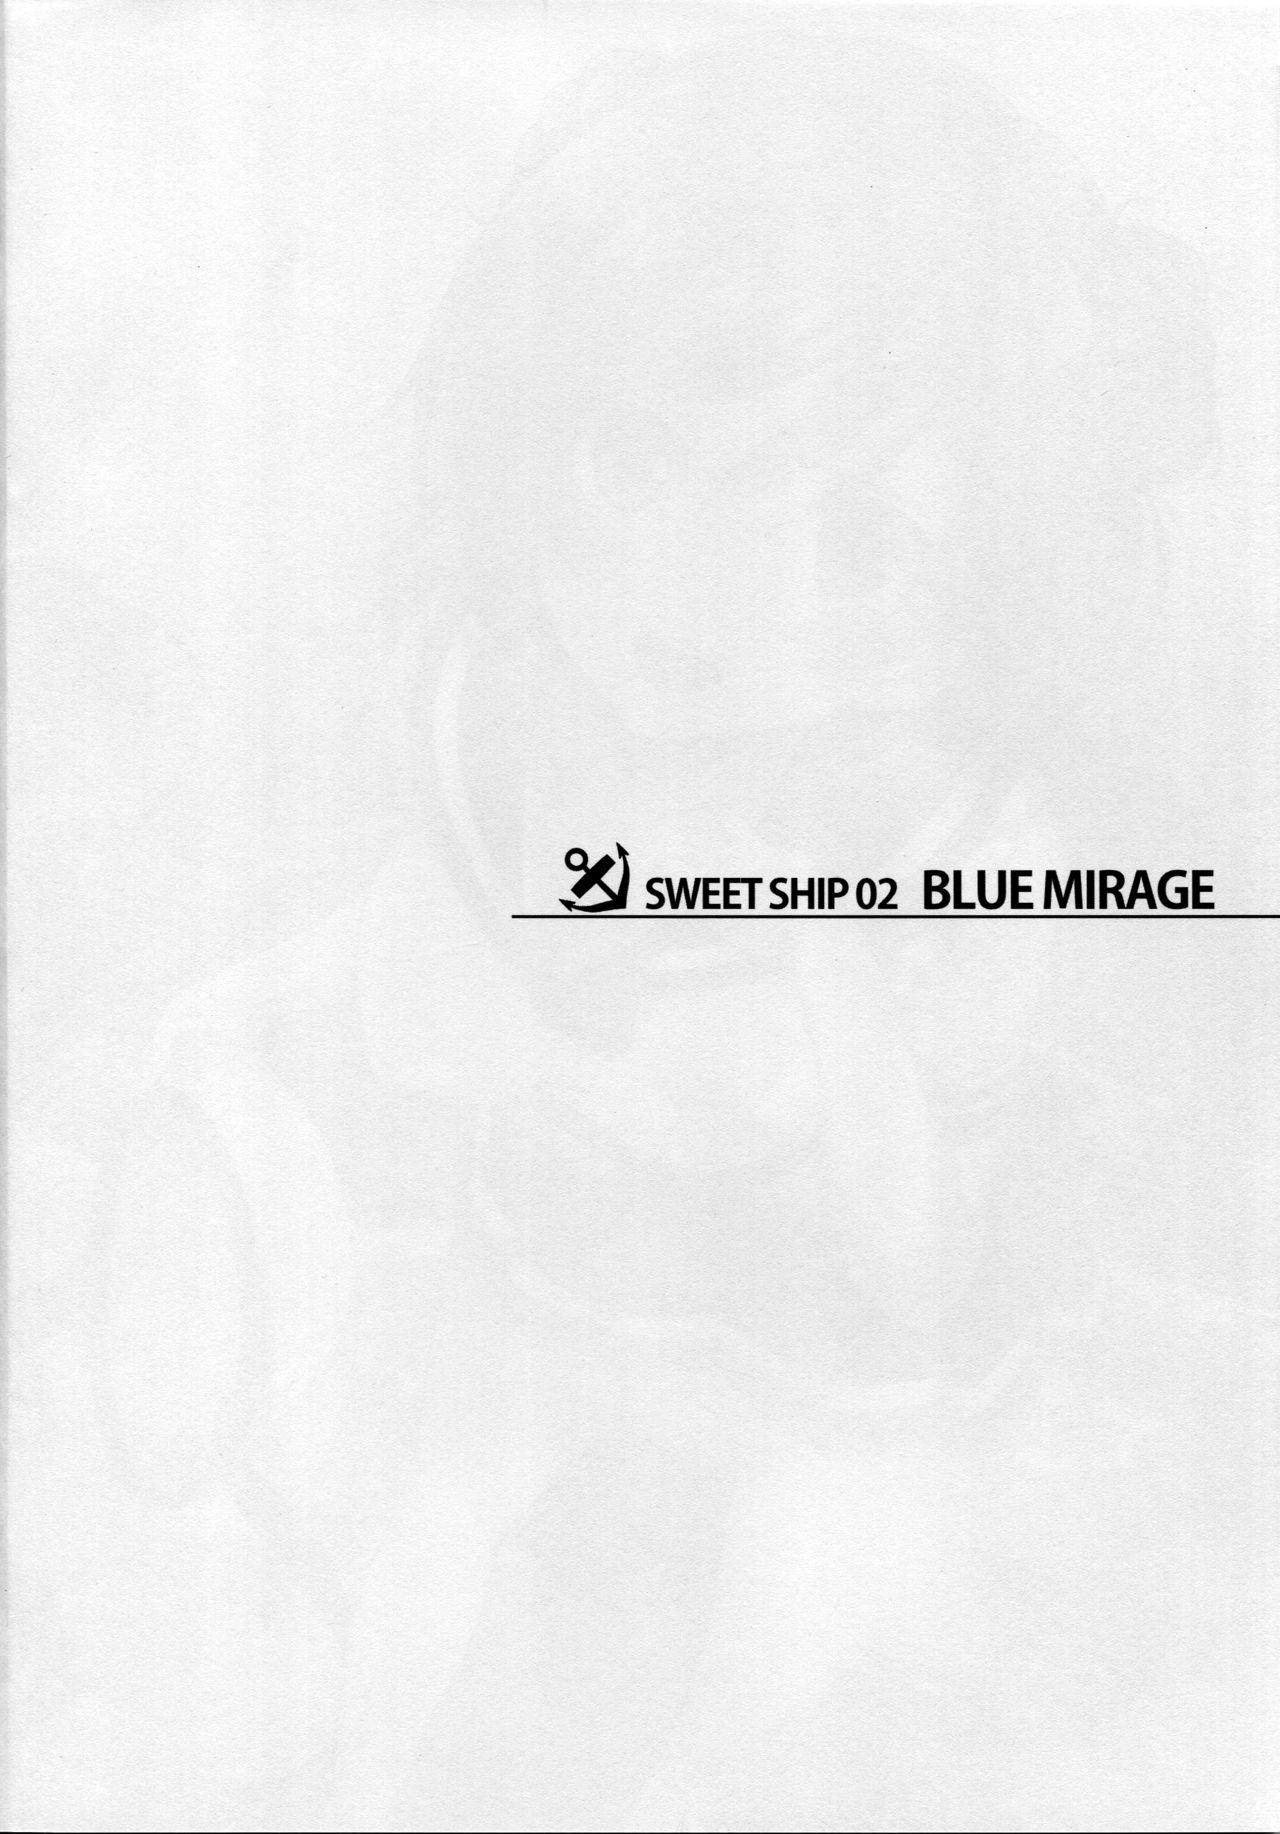 SWEET SHIP 02 BLUE MIRAGE 2